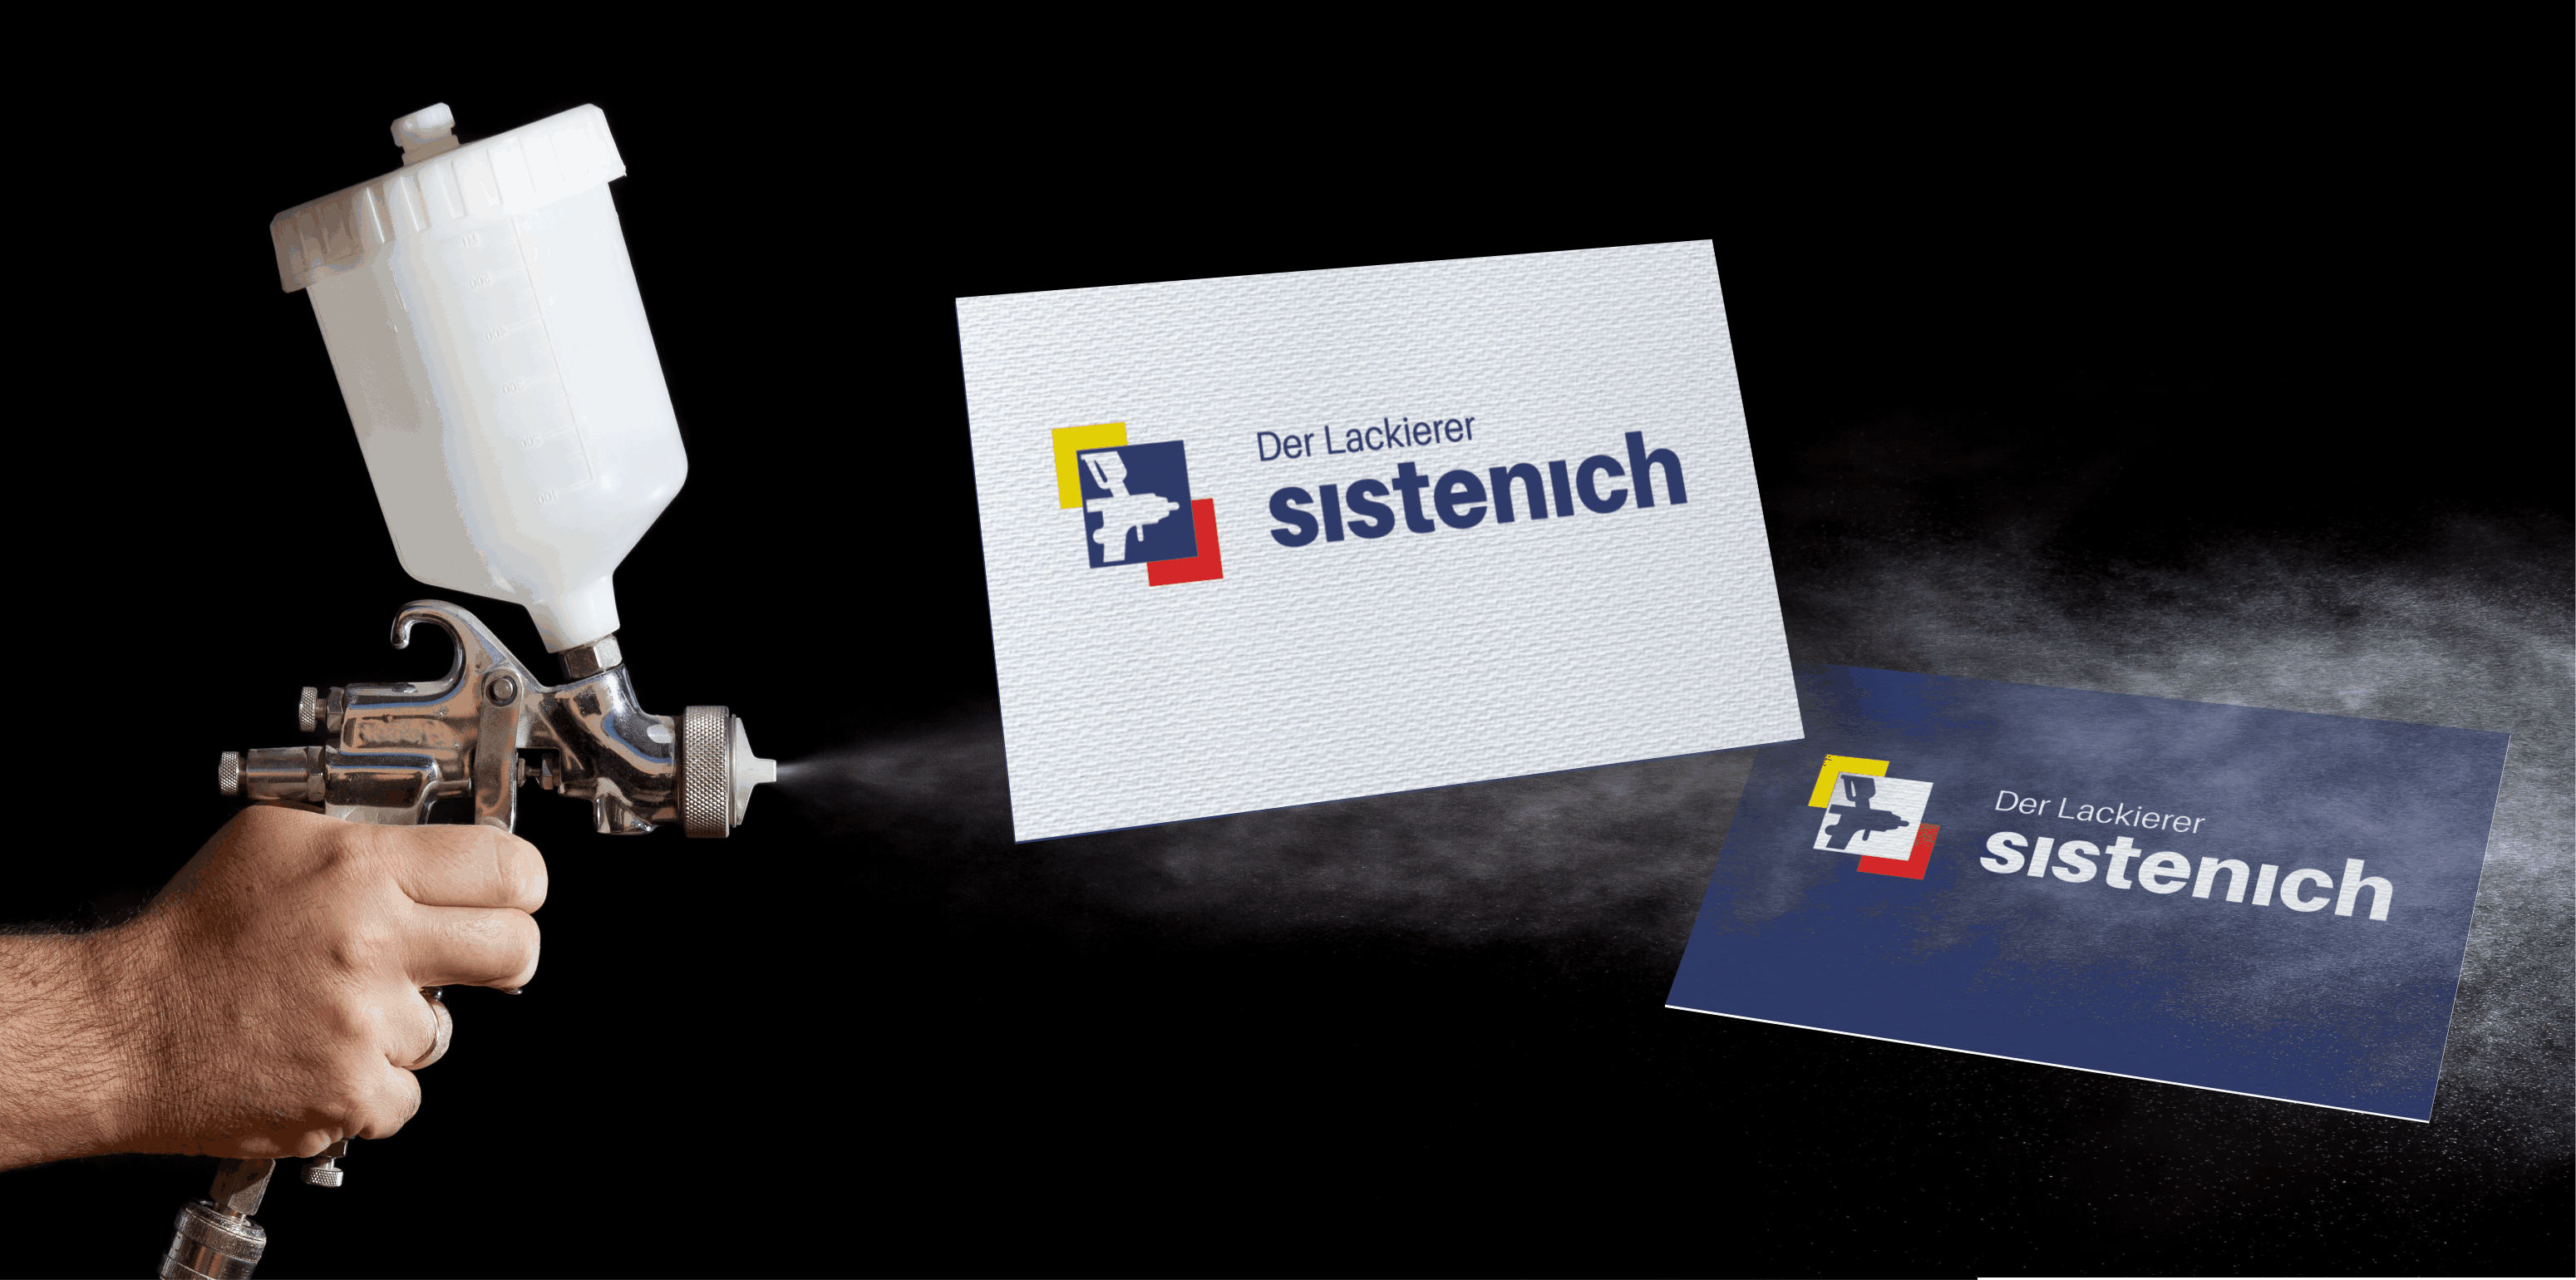 Logodesign Aachen_ Der Lackierer Sistenich_Schauwerbung Mennicken